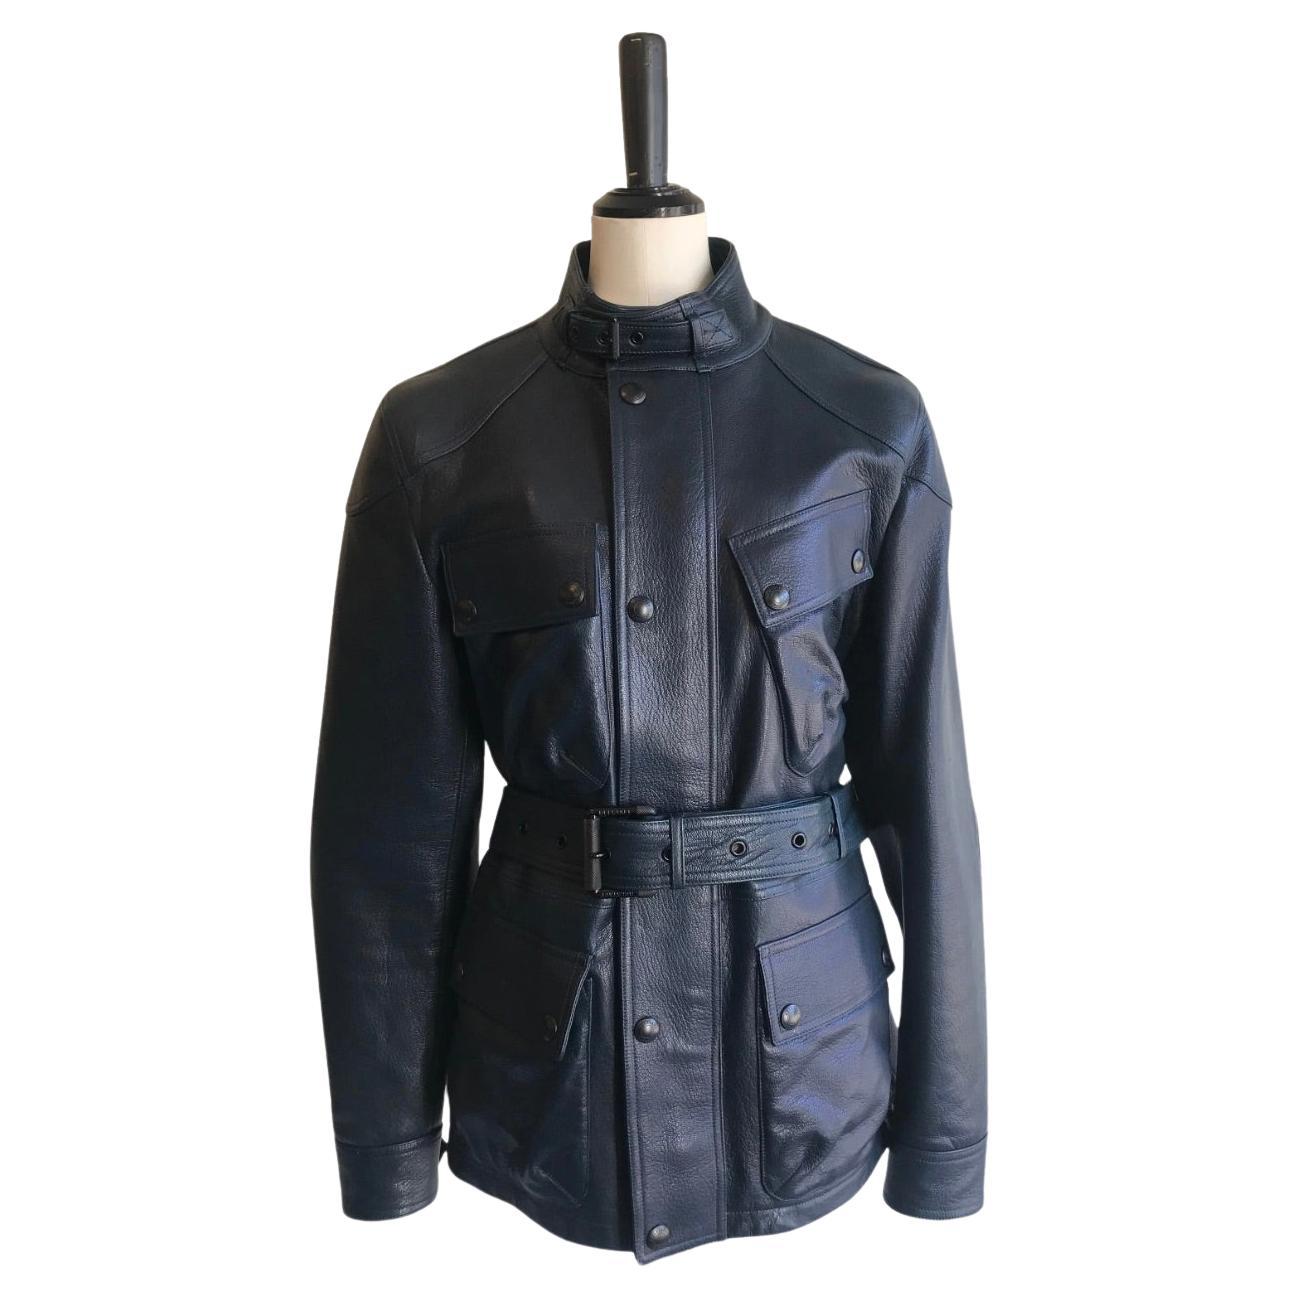 Belstaff Trialmaster Leather Jacket For Sale